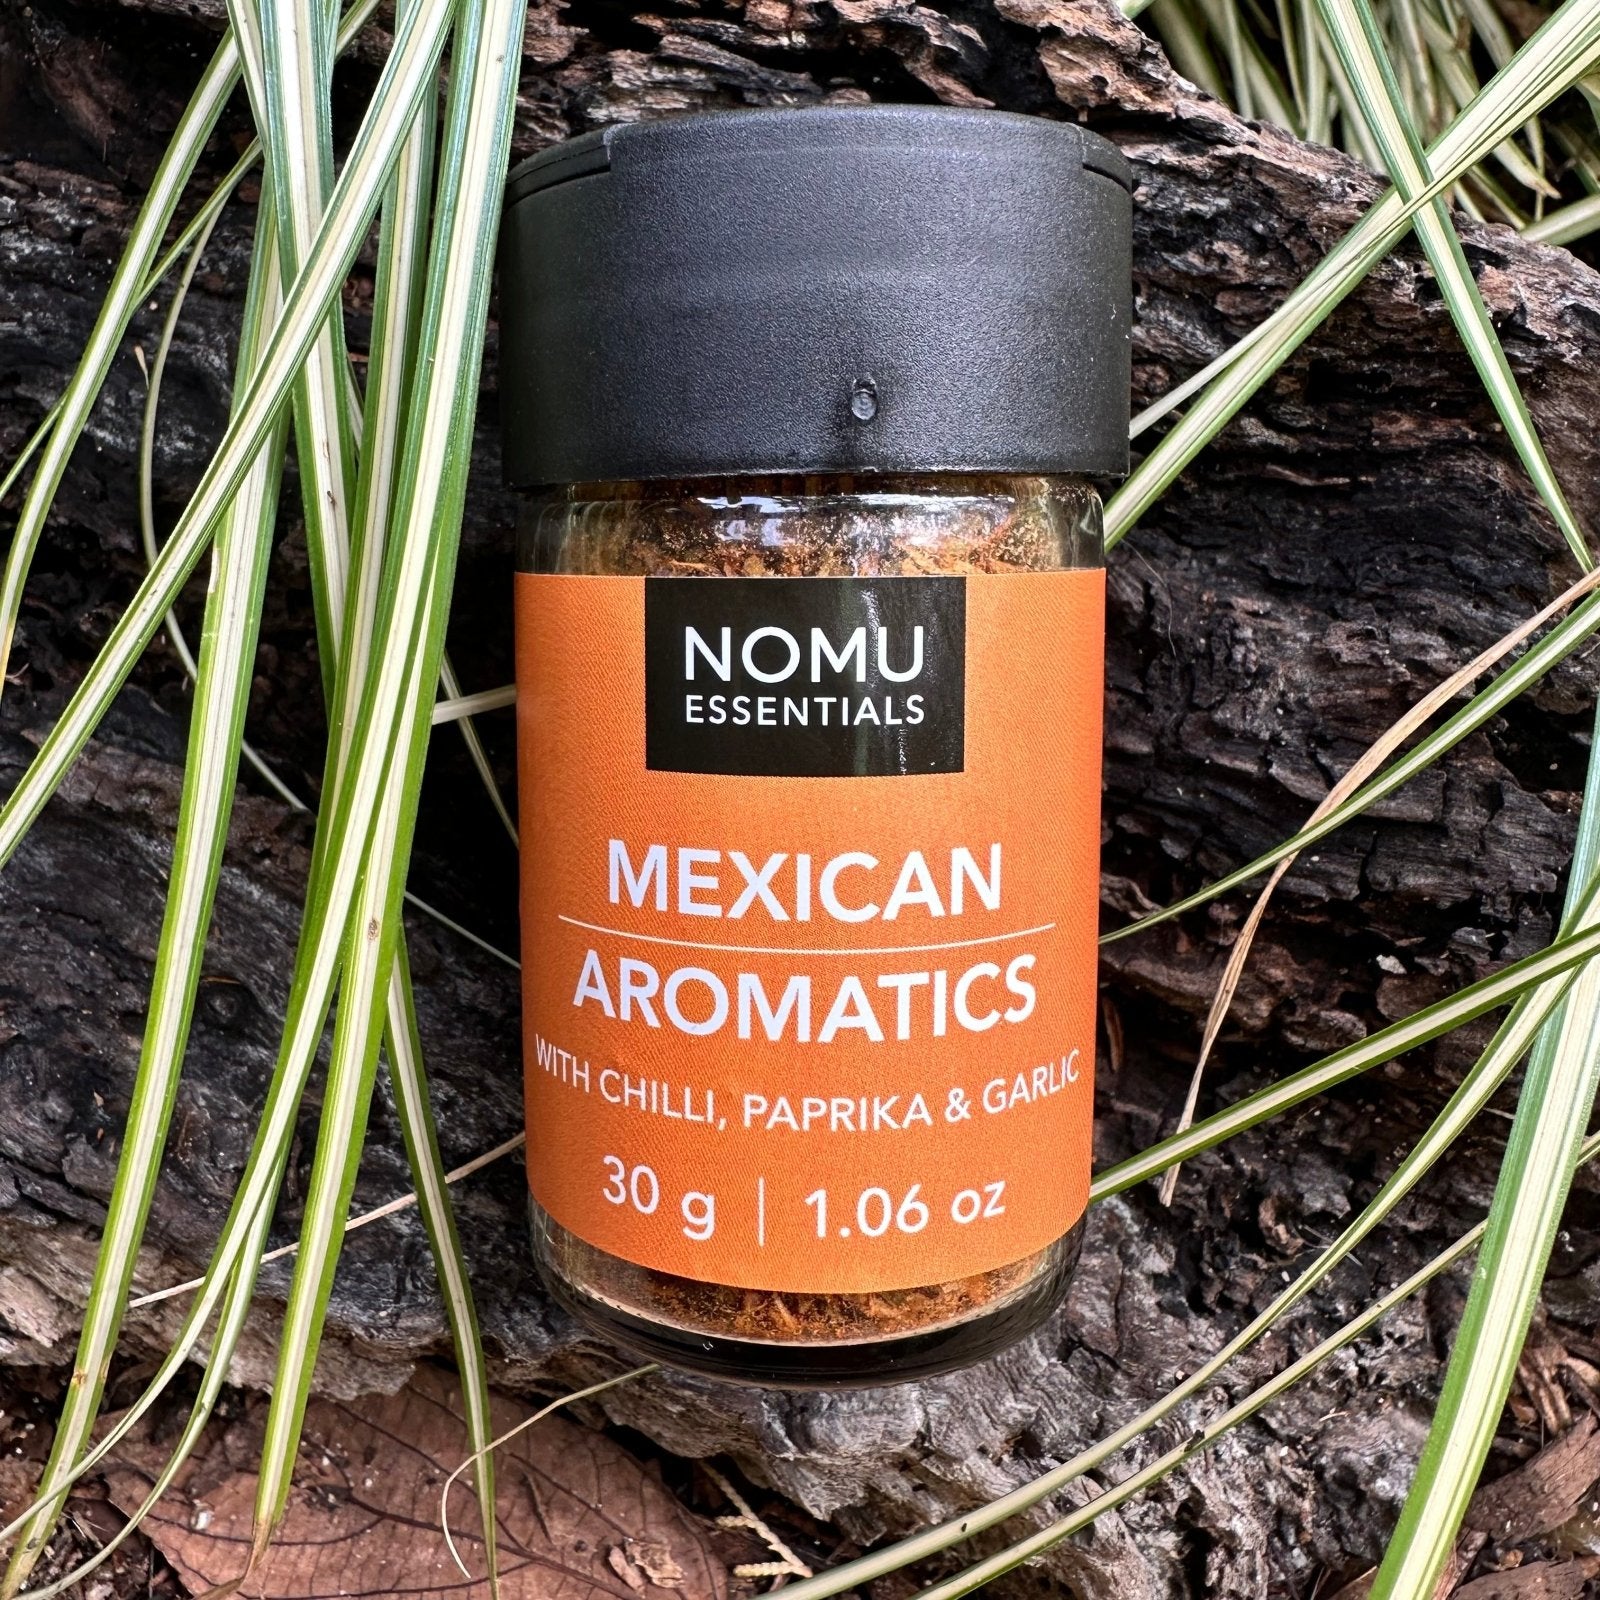 Nomu Essentials Mexican Aromatics (30g) - The Deli